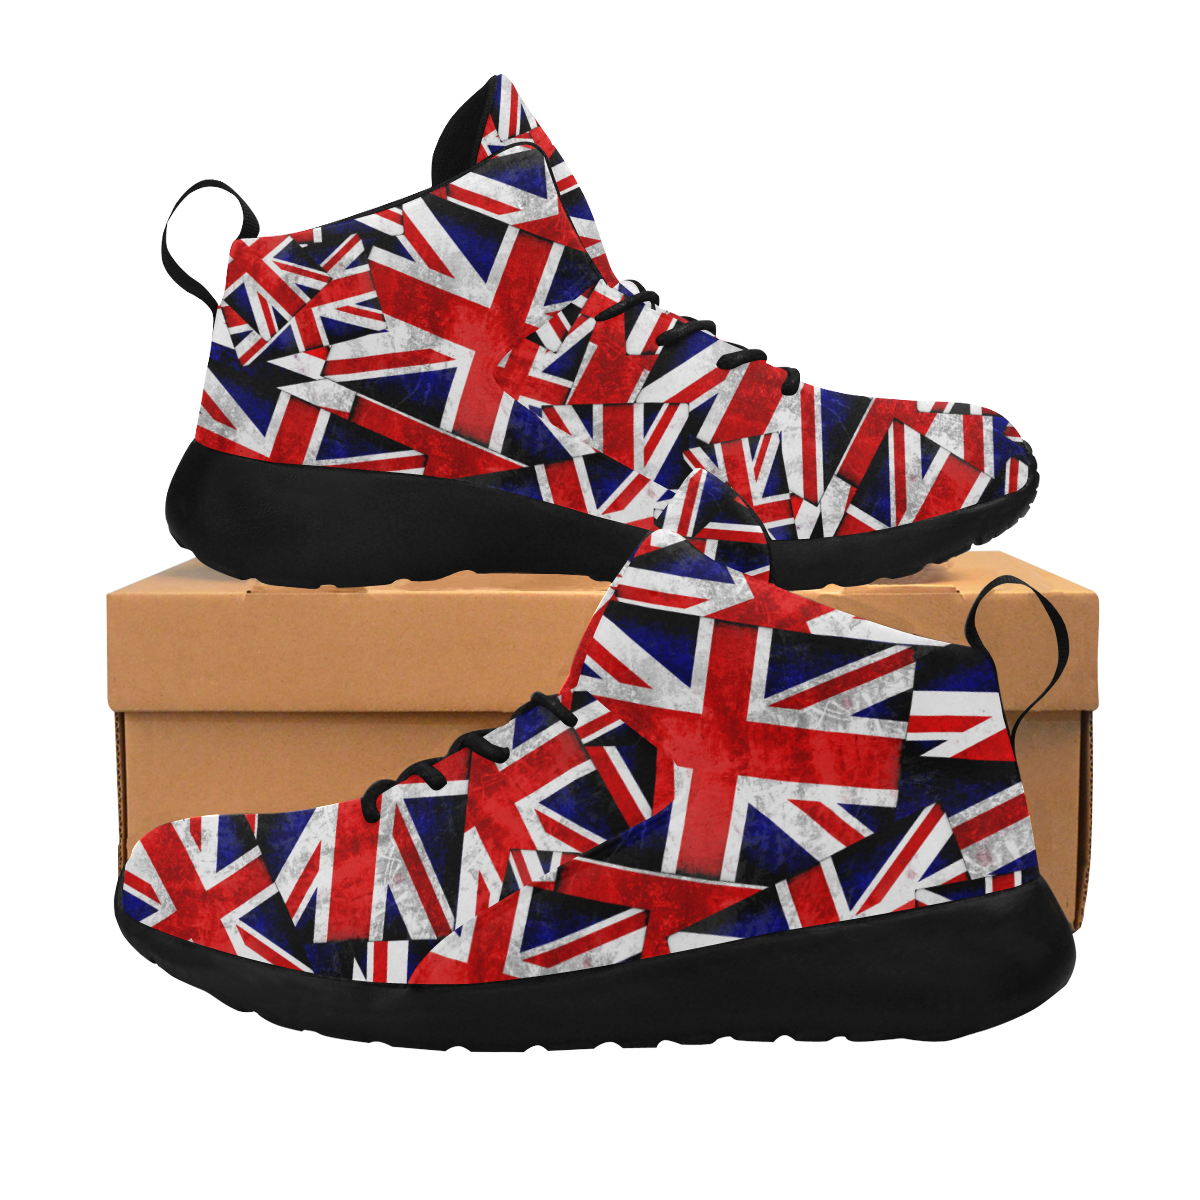 Union Jack British UK Flag Men's Chukka Training Shoes (Model 57502)